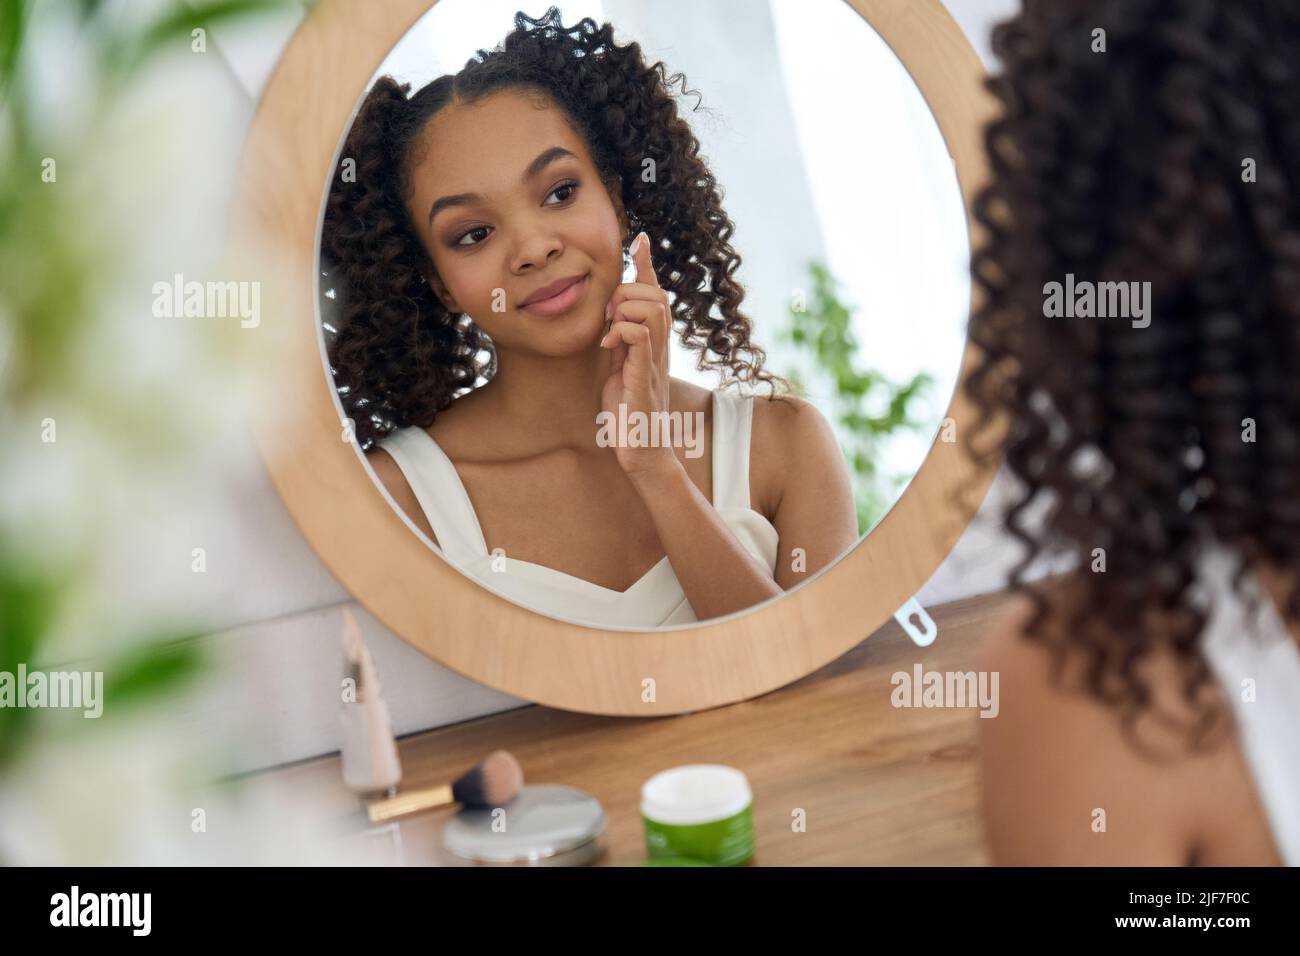 Chica africana adolescente mirando en el espejo del baño aplicando crema facial en la cara. Foto de stock